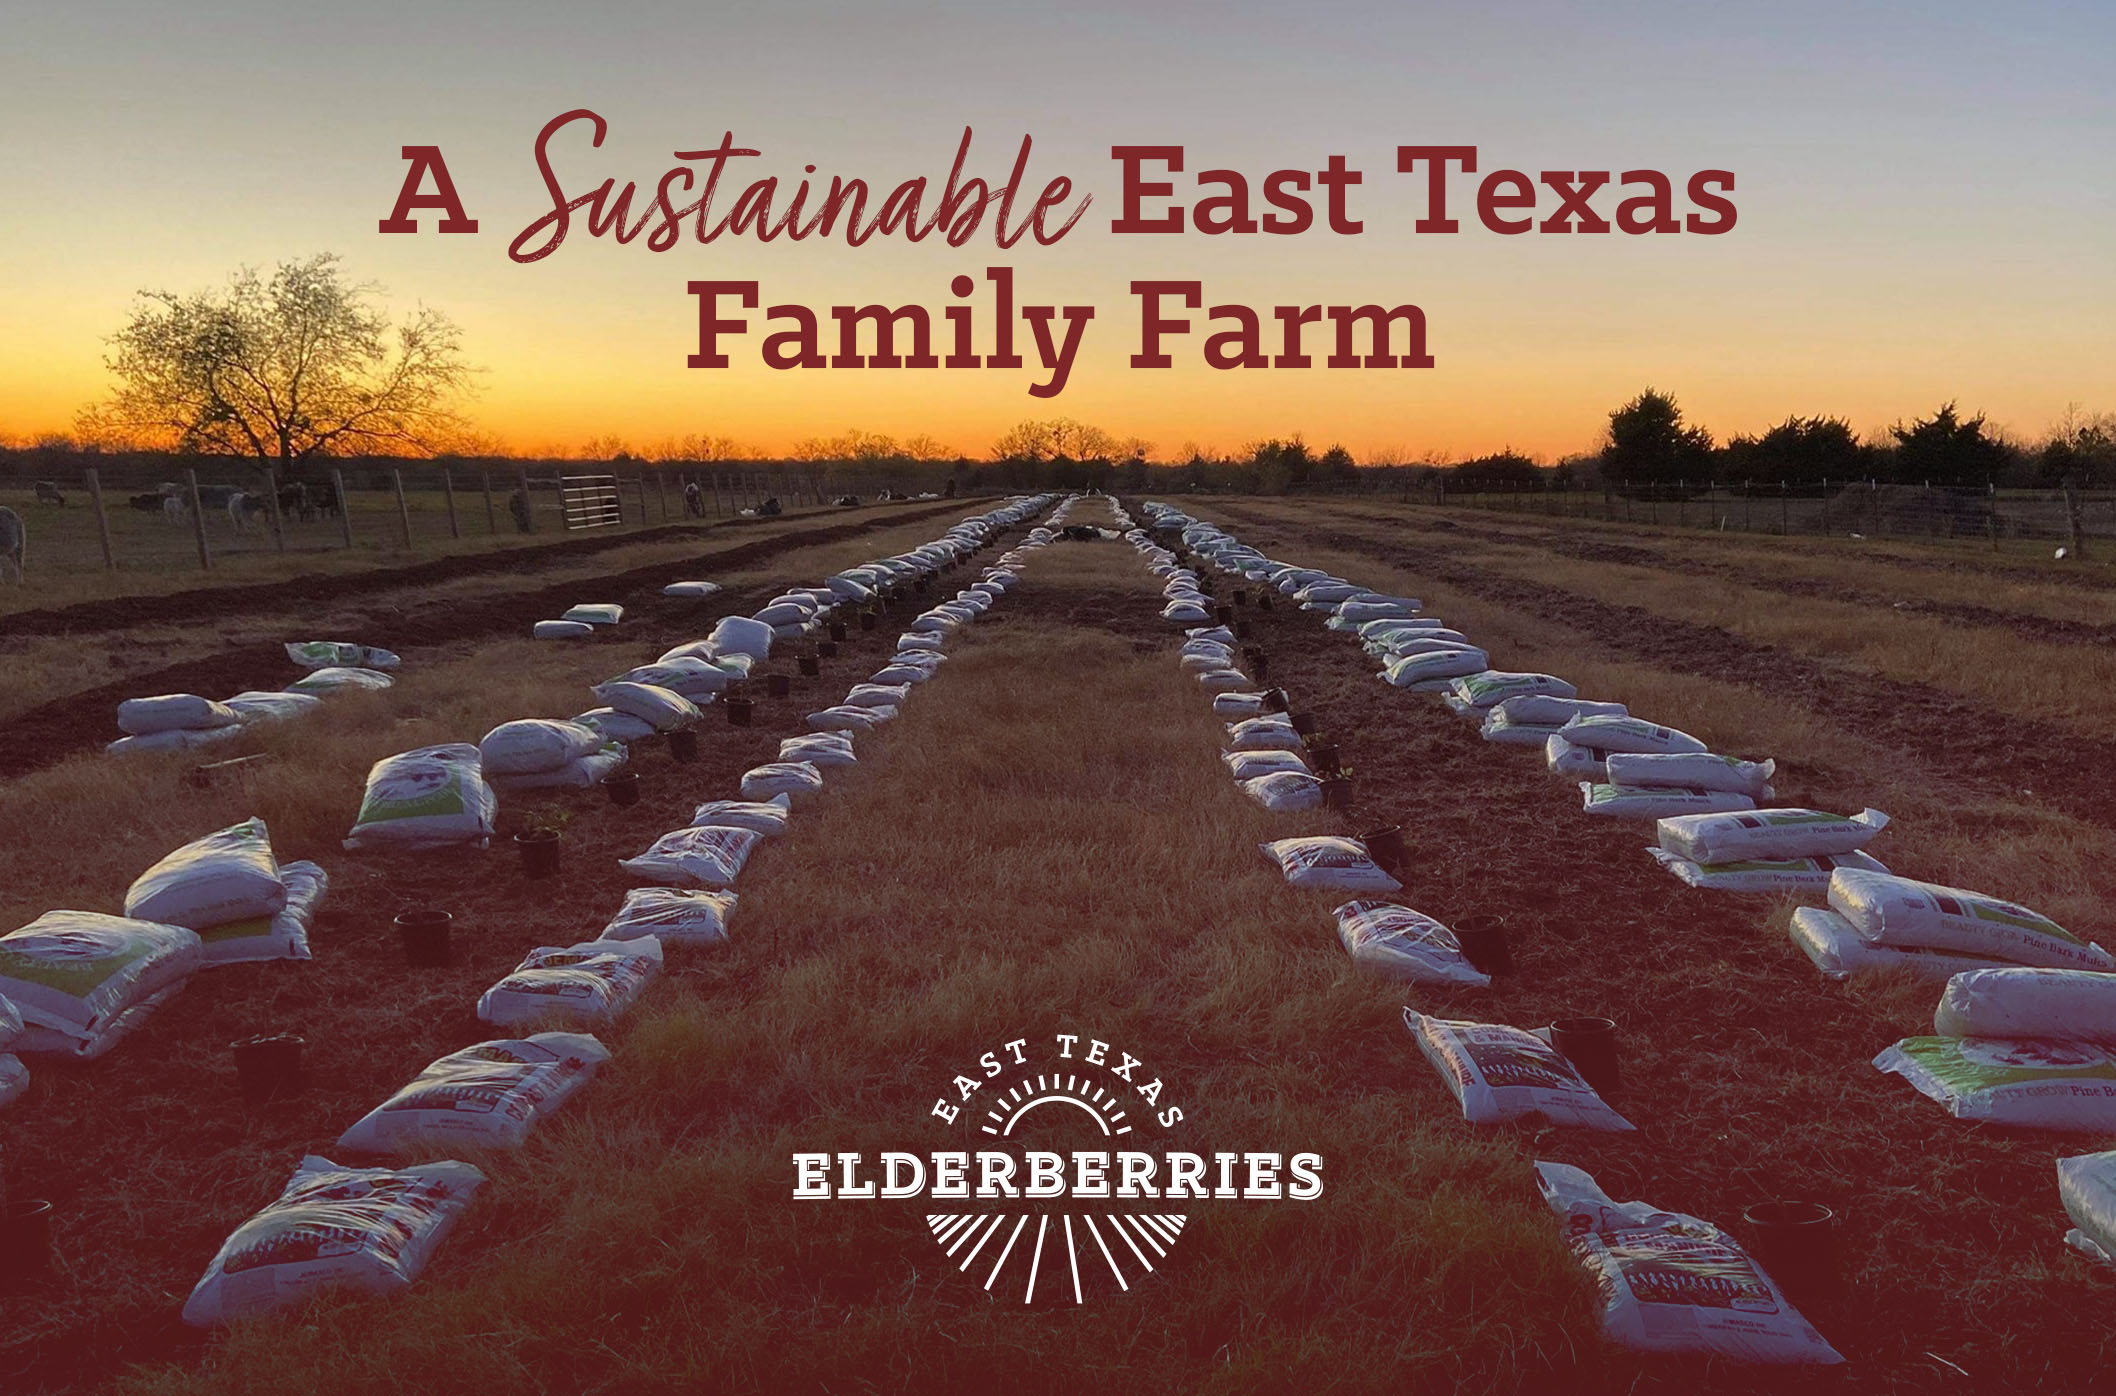 The East Texas Elderberries logo in red